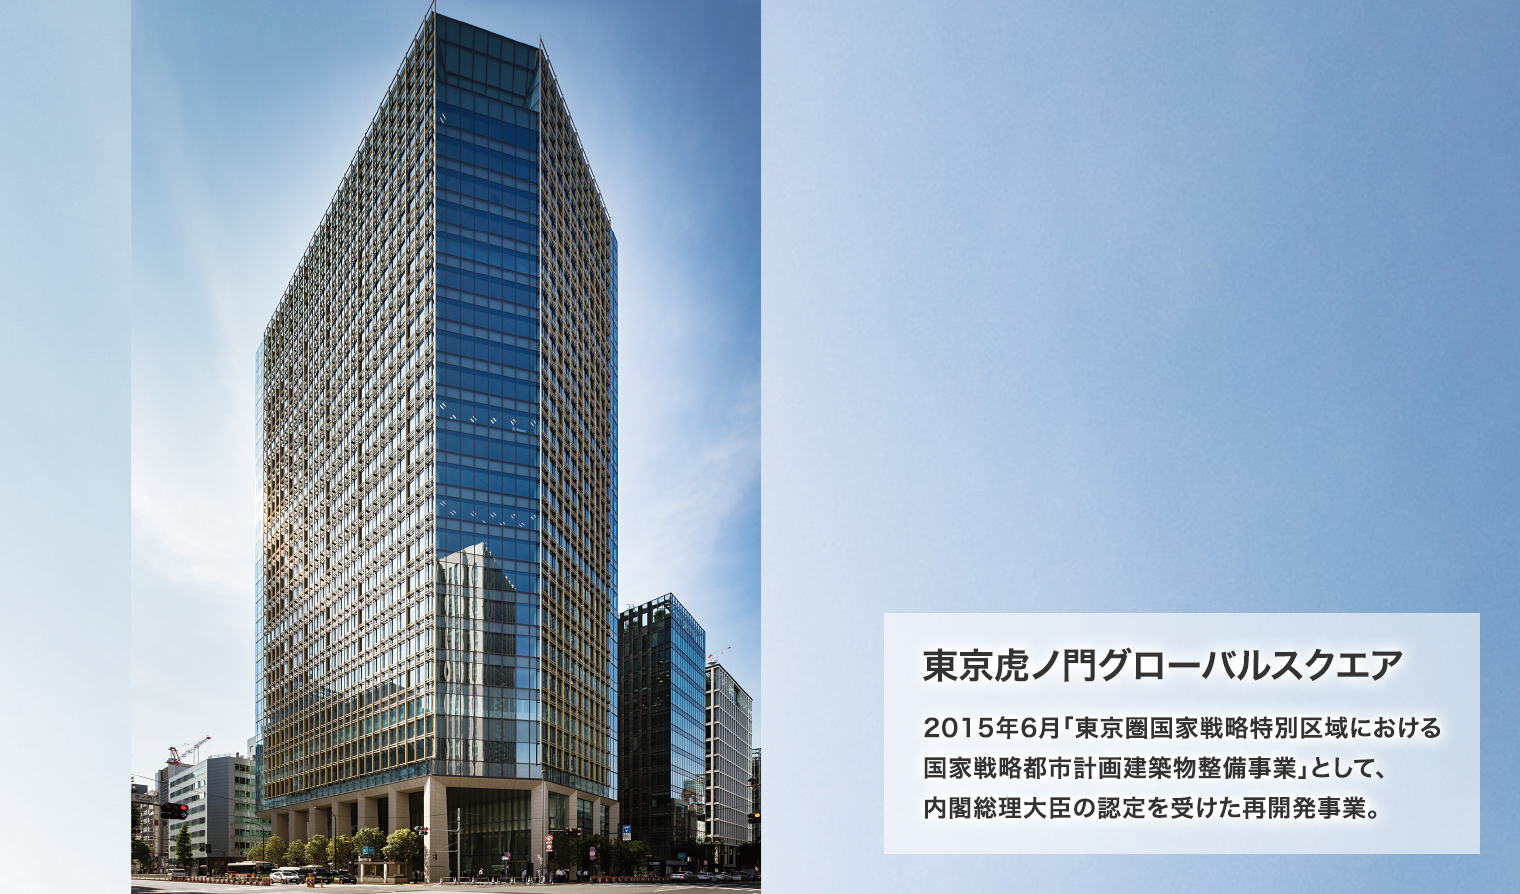 東京虎ノ門グローバルスクエア 2015年6月「東京圏国家戦略特別区域における国家戦略都市計画建築物整備事業」として、内閣総理大臣の認定を受けた再開発事業。